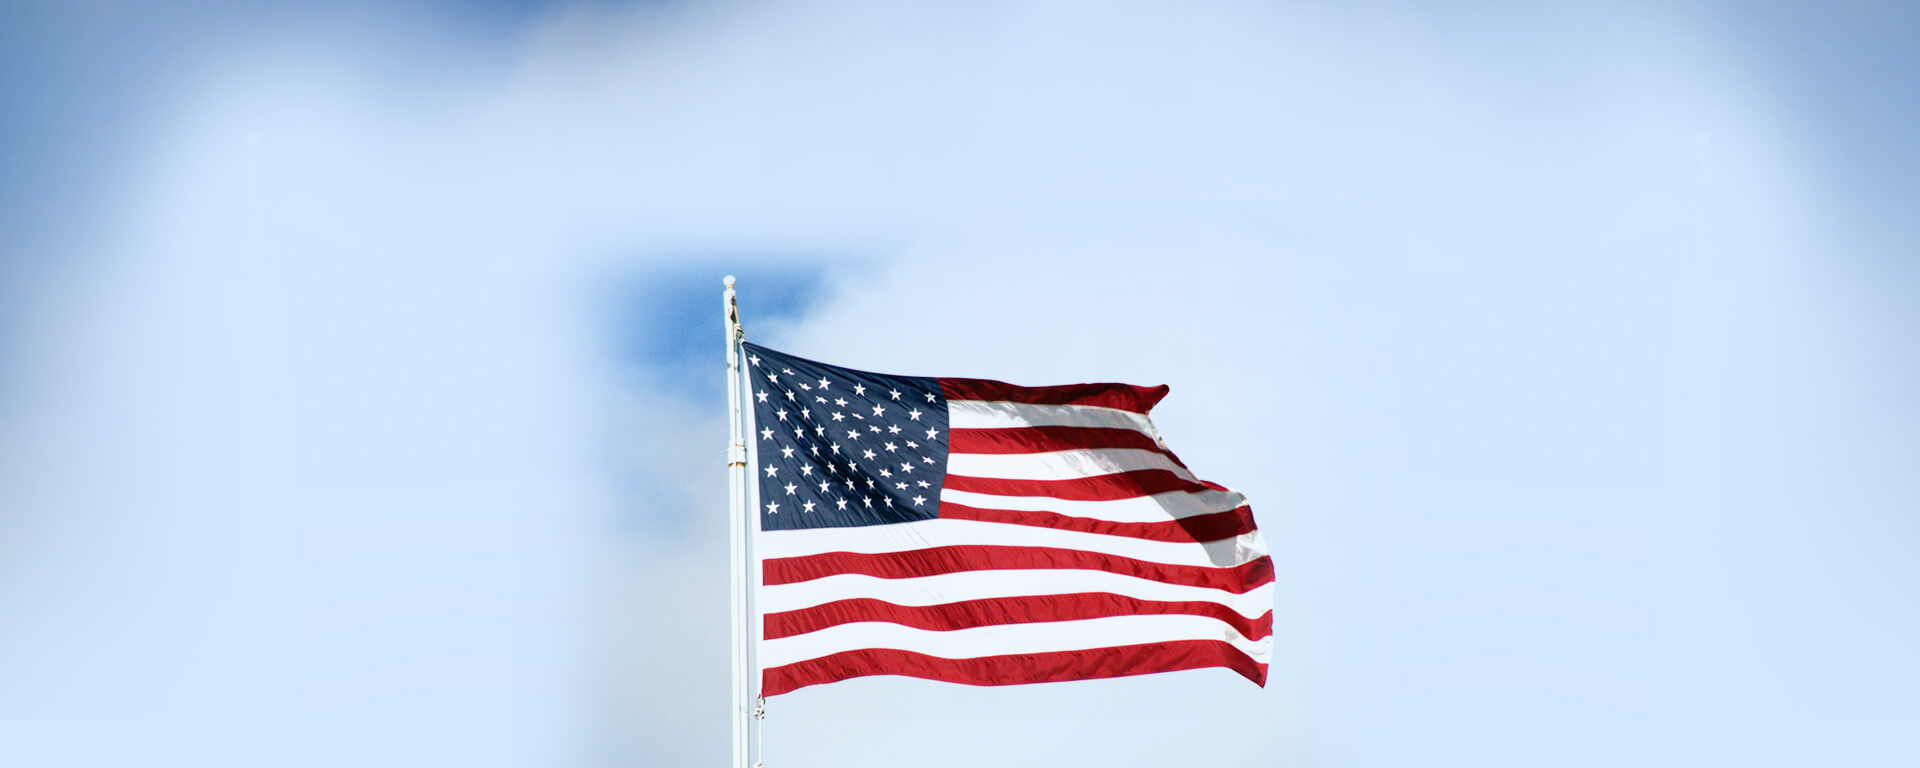 Hoisted U.S Flag flying in sky